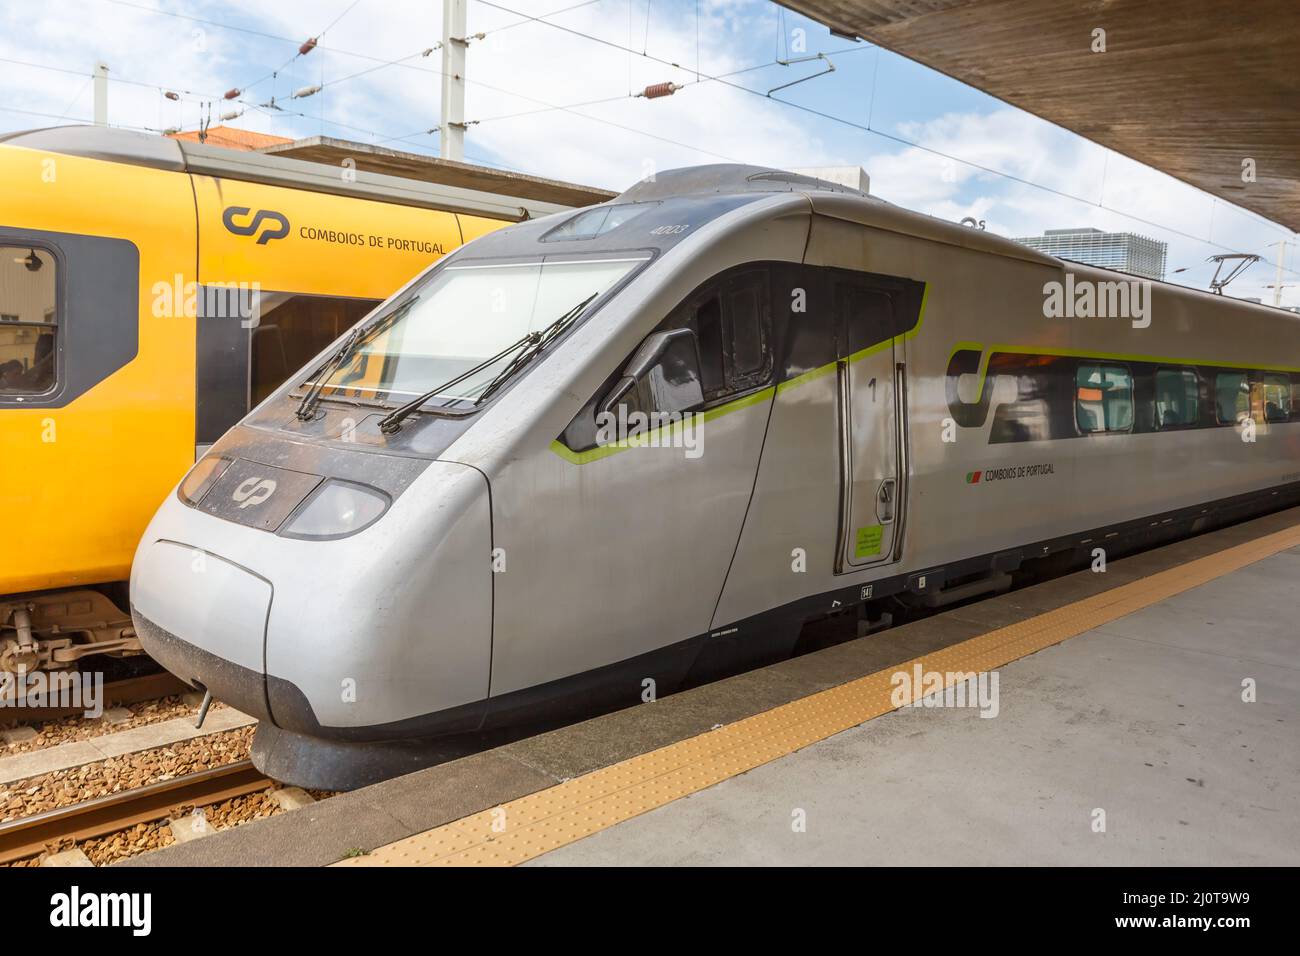 Treno ad alta velocità Alfa, treno ferroviario pendolare a Porto Campanha, in Portogallo Foto Stock